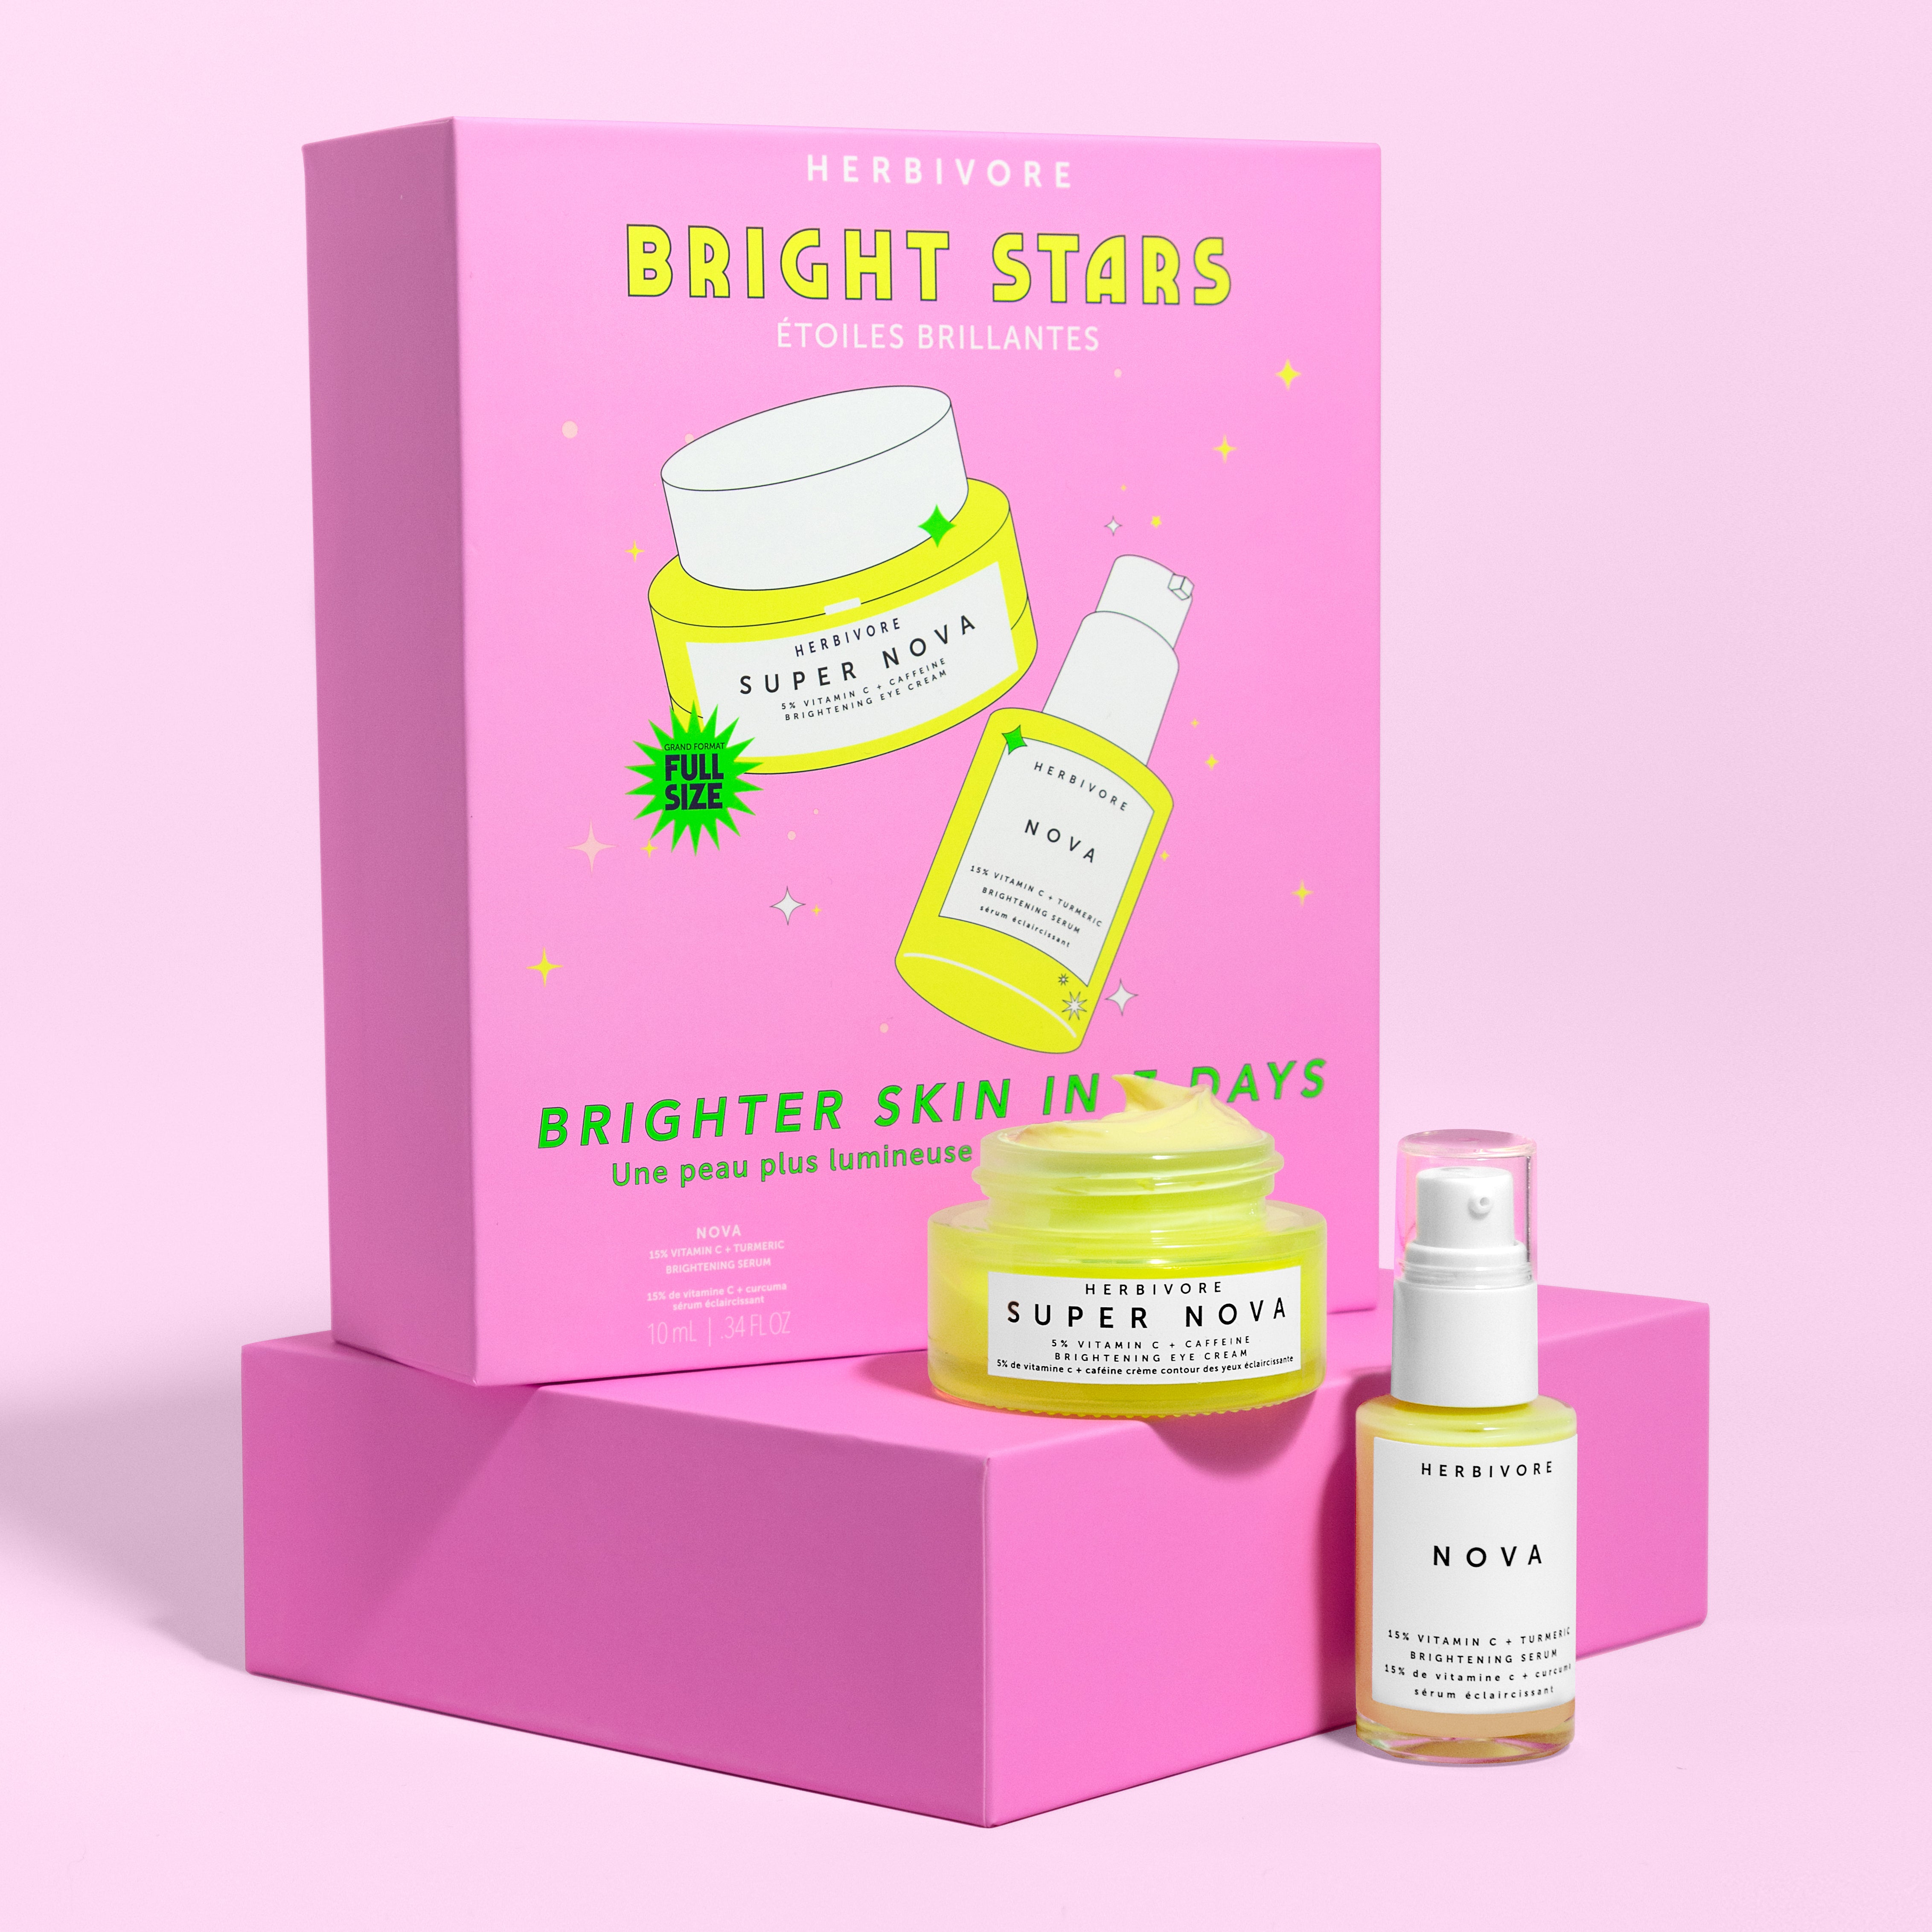 Bright Stars Gift Set Box with Mini Nova Serum and full-size Super Nova Eye Cream